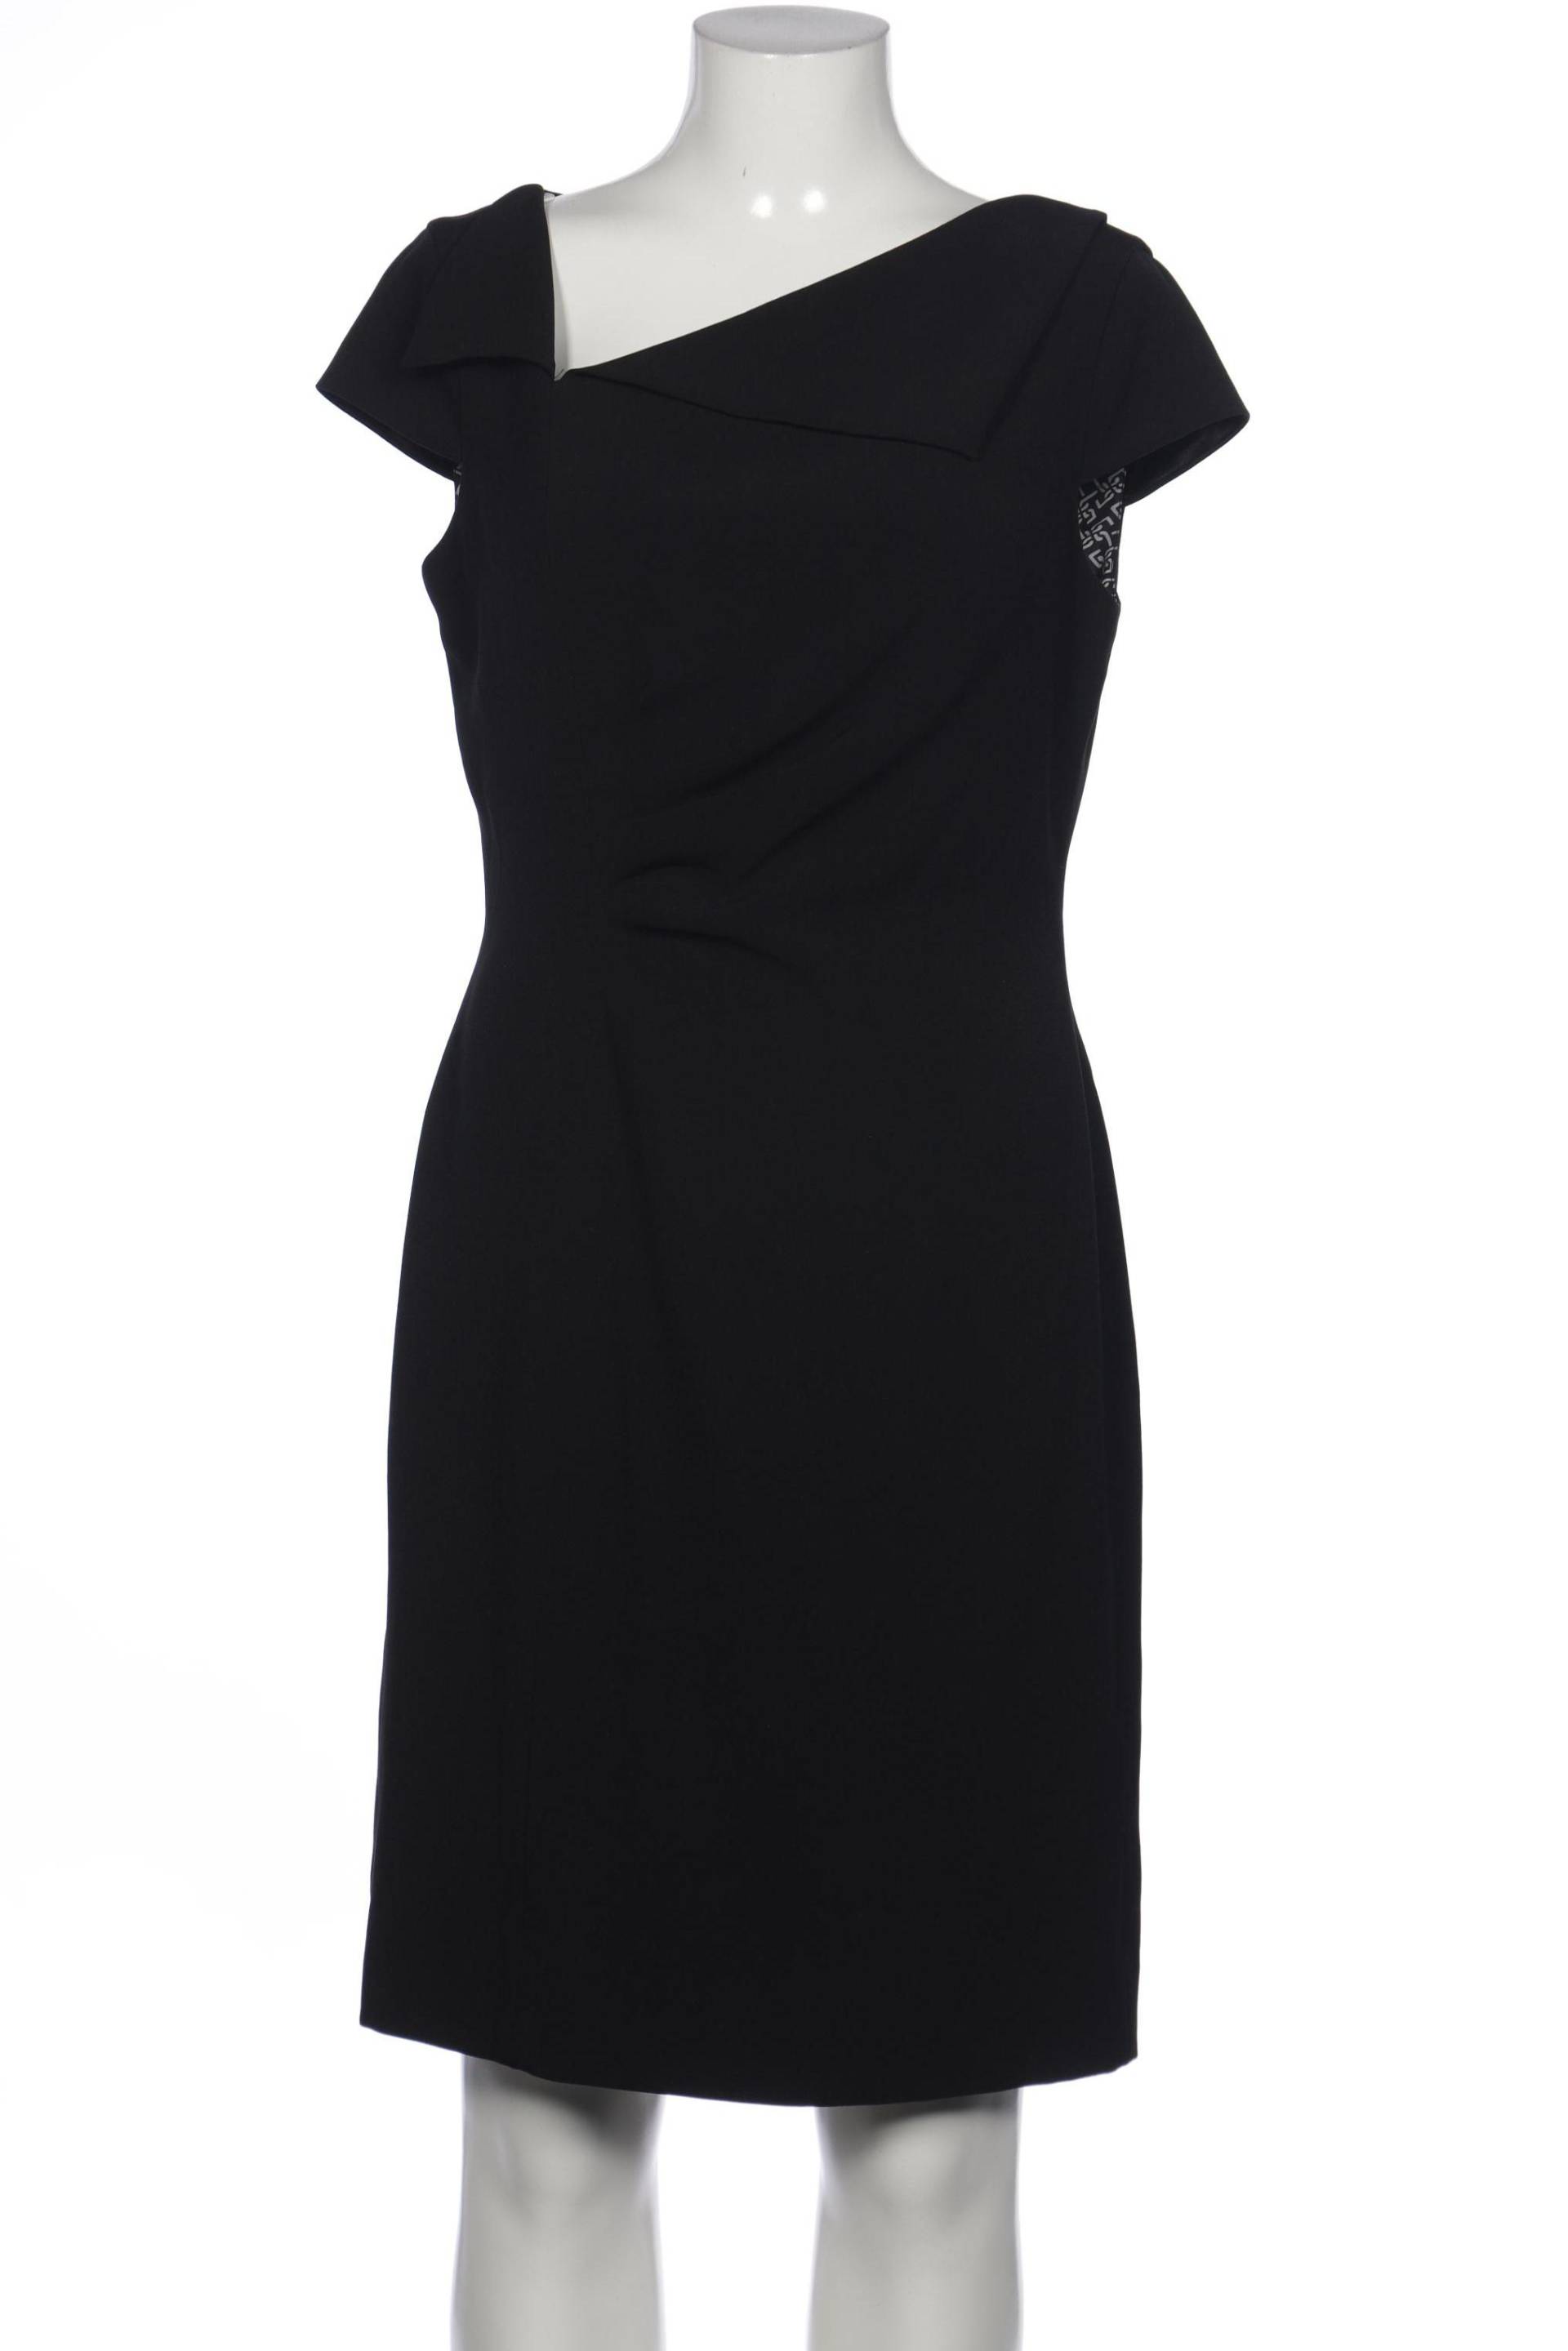 Tahari Arthur S. Levine Damen Kleid, schwarz von Tahari Arthur S. Levine